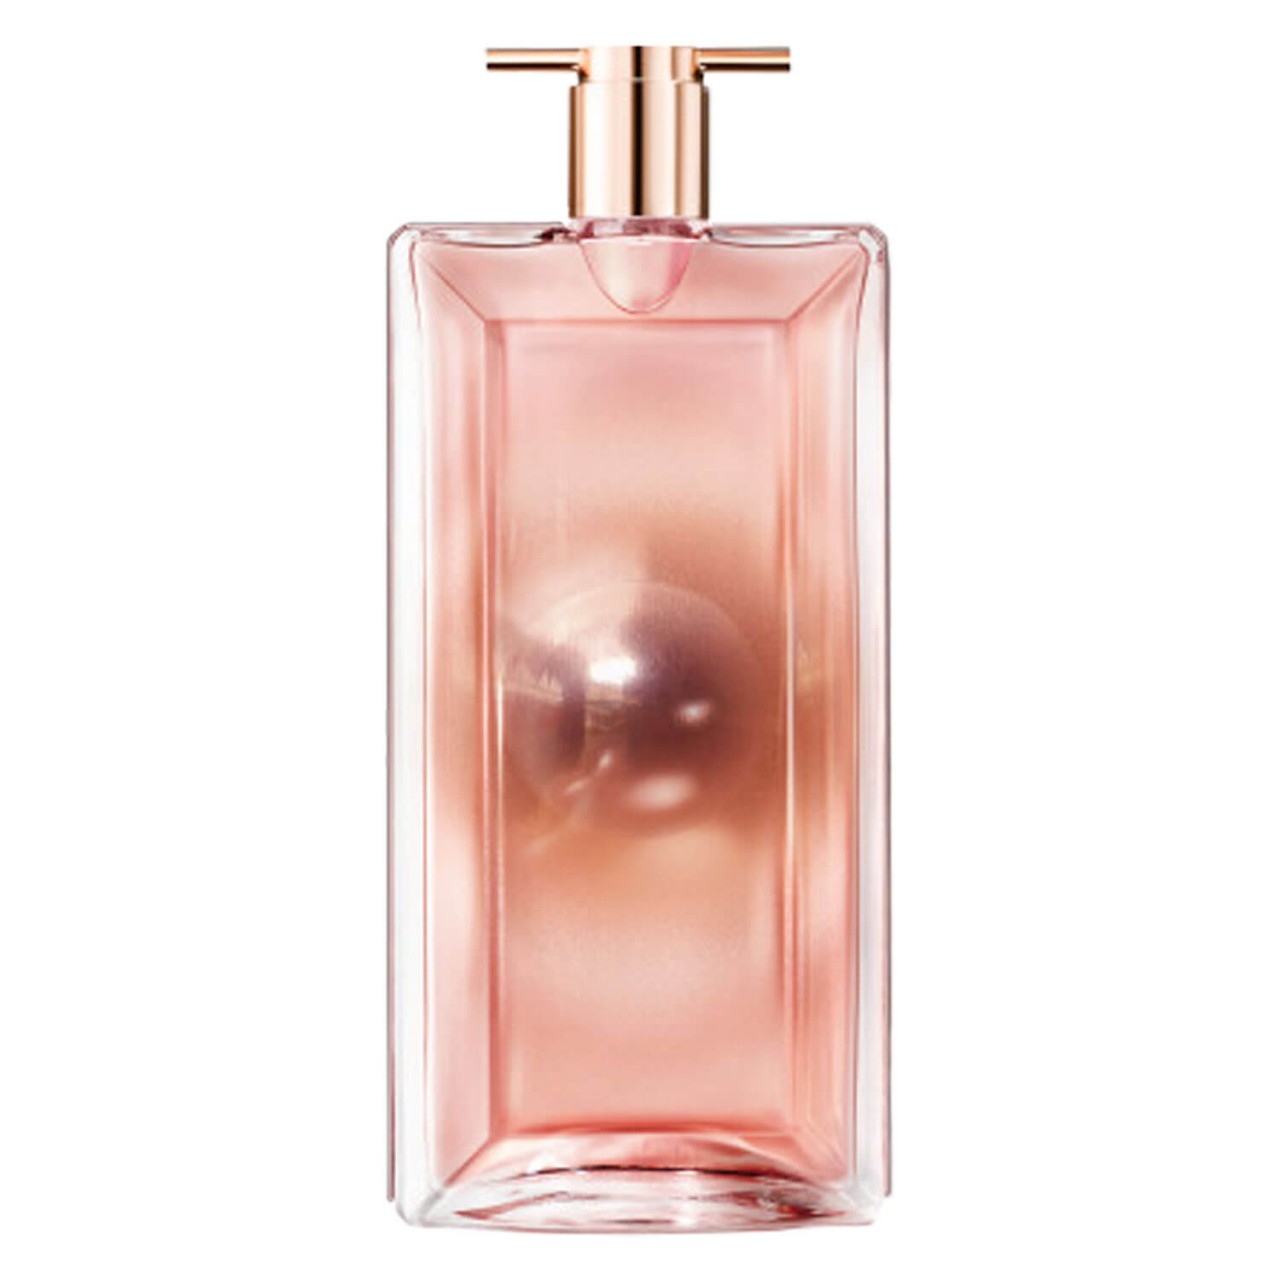 Idôle - Aura Eau de Parfum von Lancôme